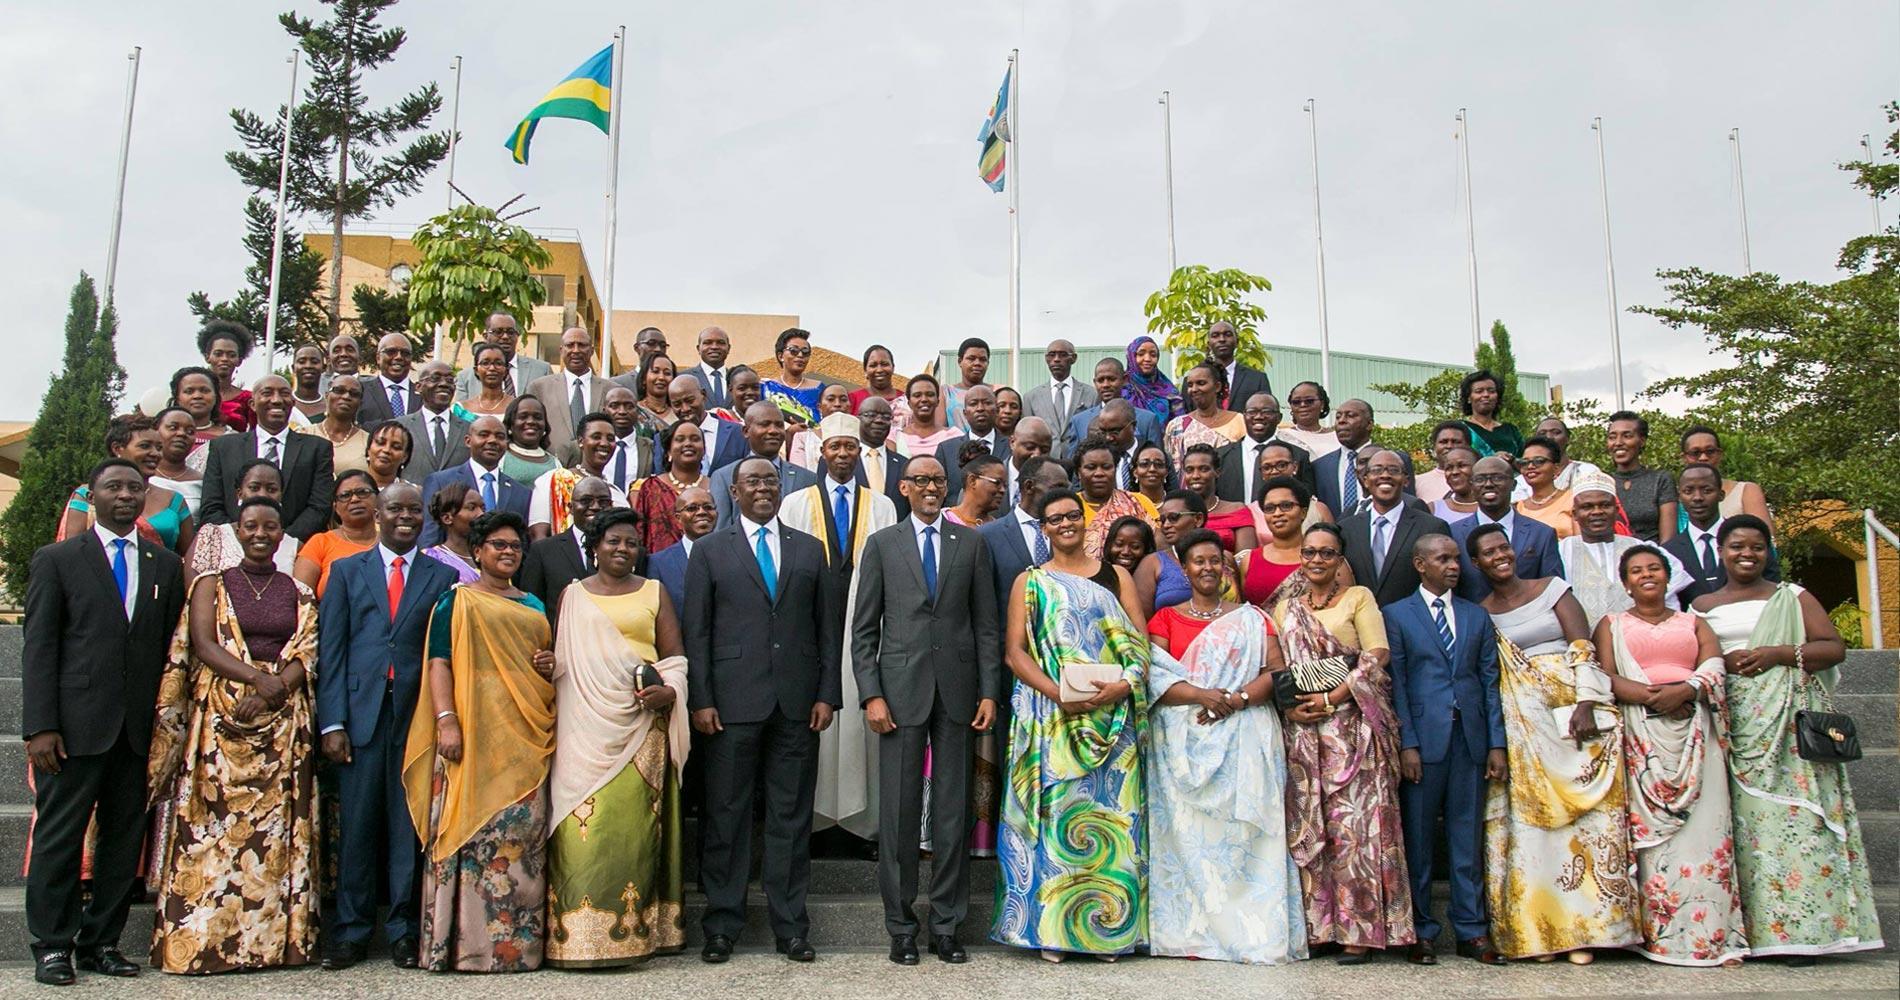 Ruanda ist führend und erfolgreich bei der Gleichstellung der Geschlechter